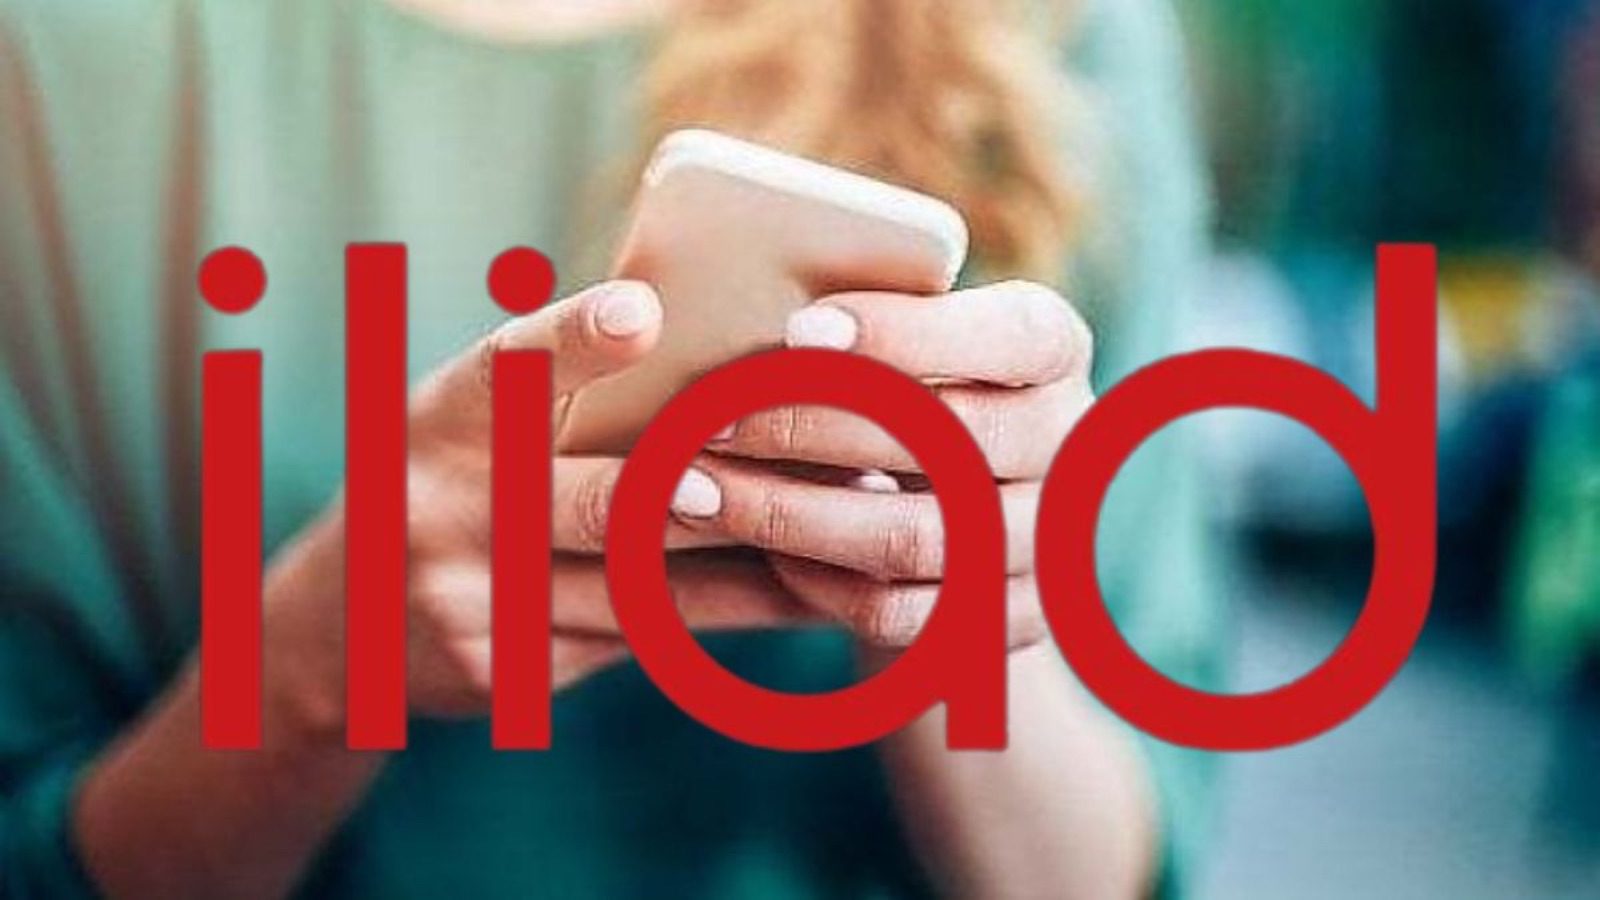 Iliad batte Vodafone, noto servizio si aggiorna con grandi novità